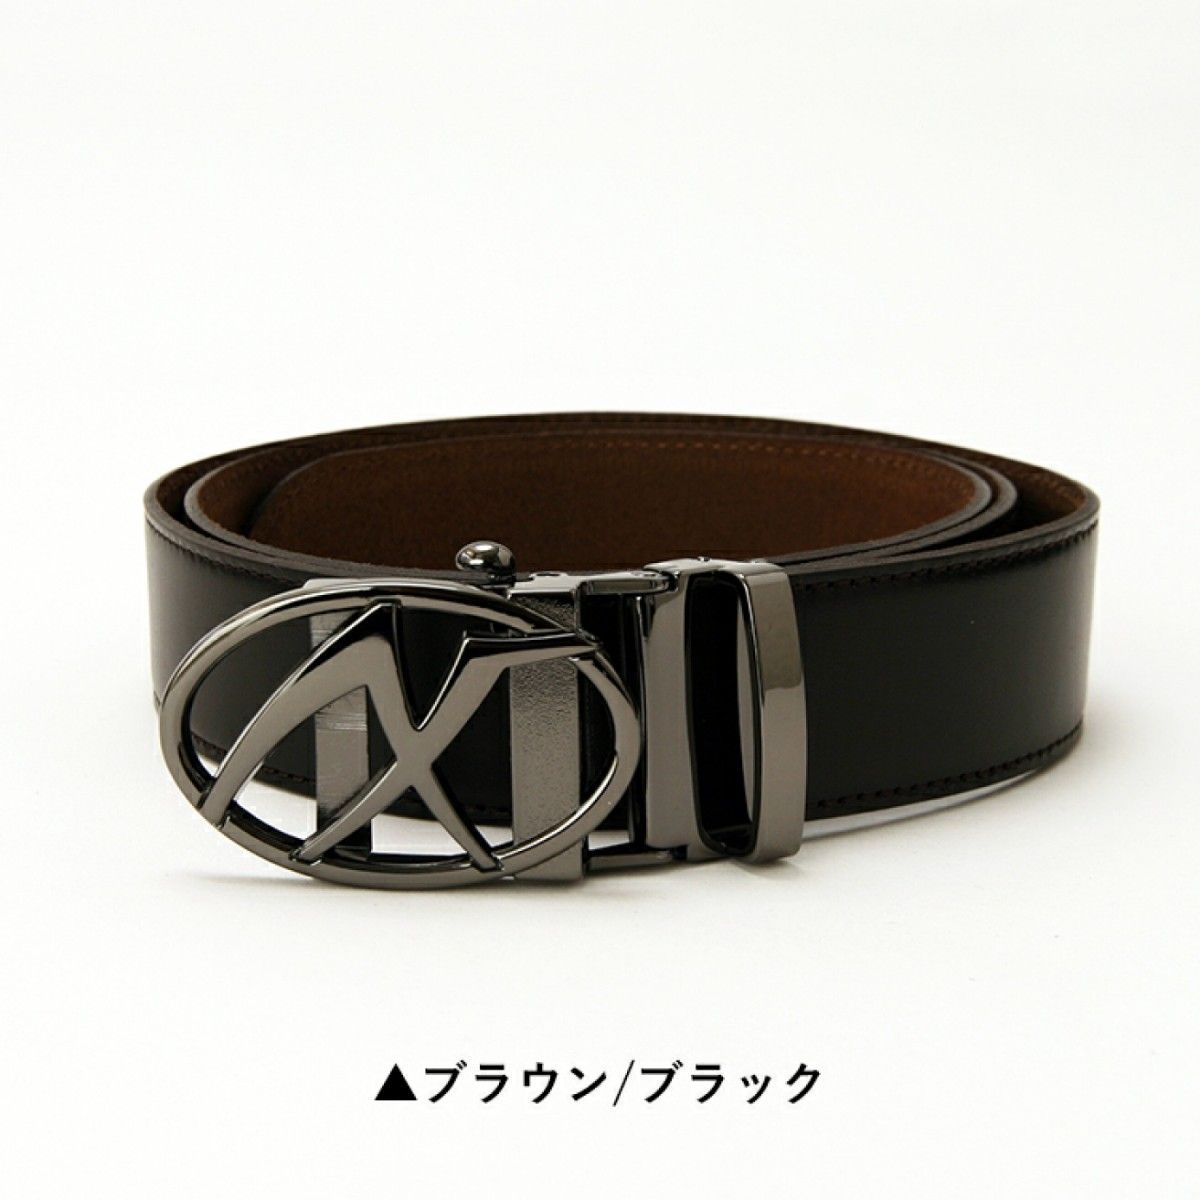 訳あり特価 AXF 本革穴なしベルト(日本製）国際モデル  Dark brown革xブラックバックル